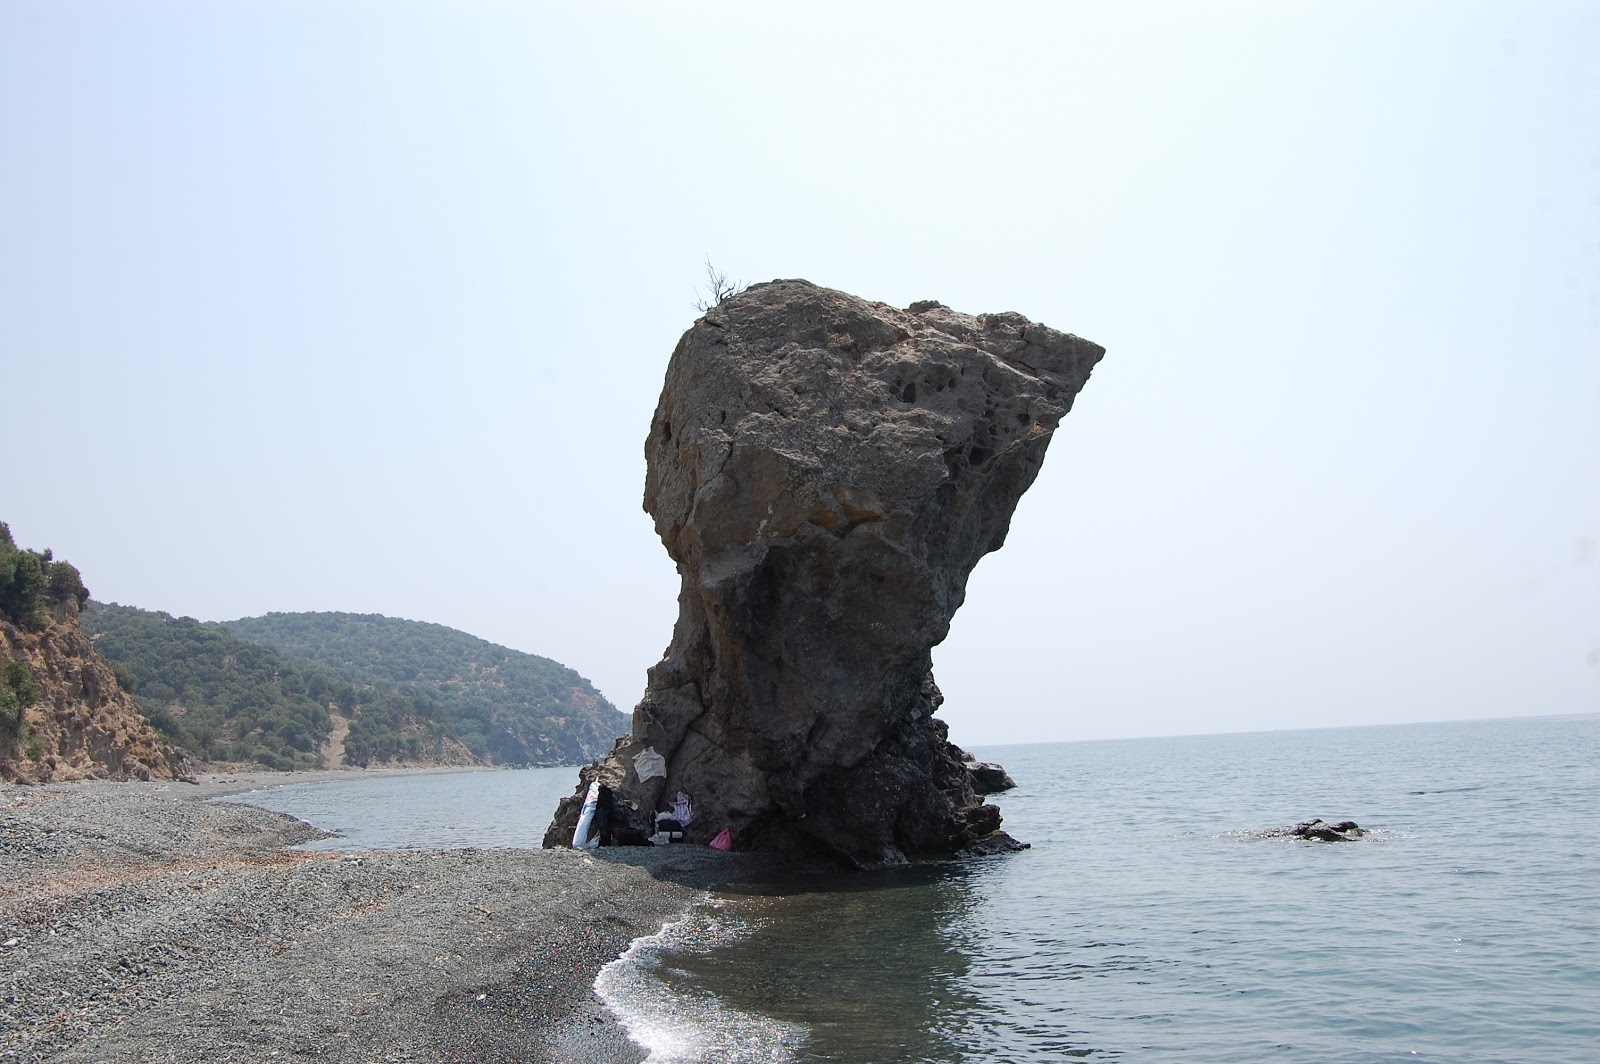 Fotografie cu Dafnes II cu o suprafață de apa pură turcoaz